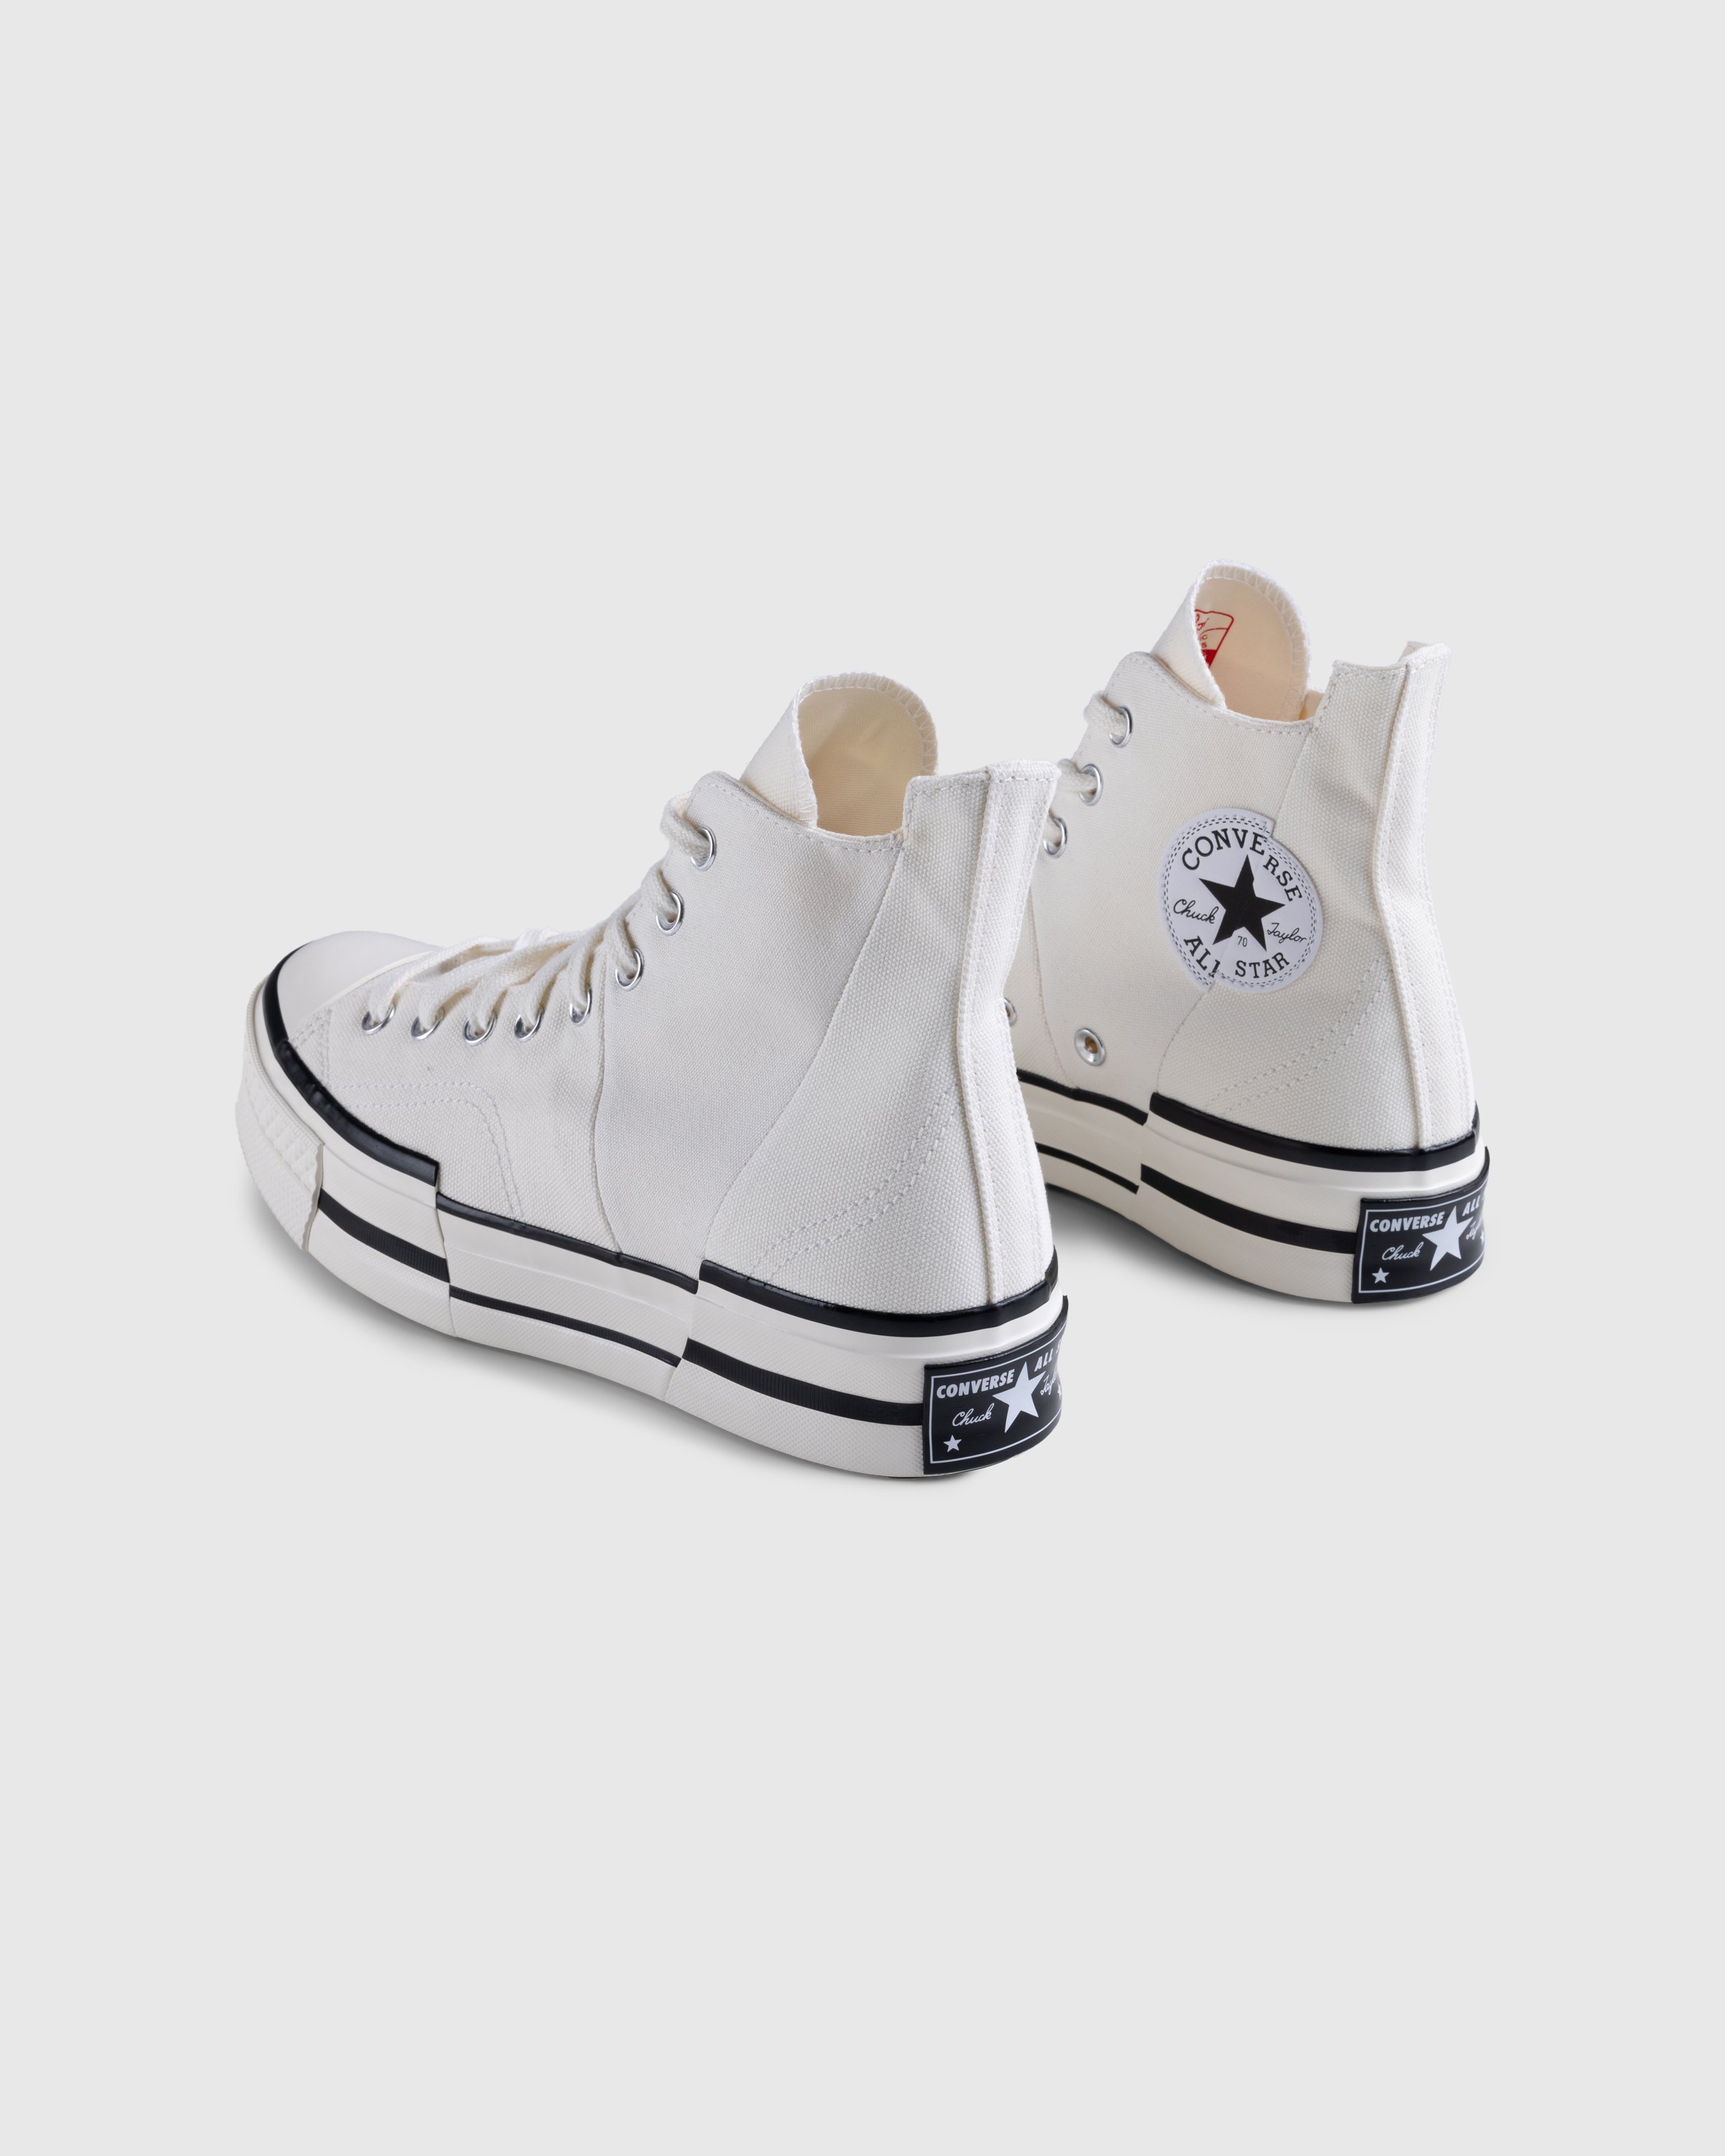 Converse - Chuck 70 Plus Canvas Egret/Black/Egret - Footwear - White - Image 4